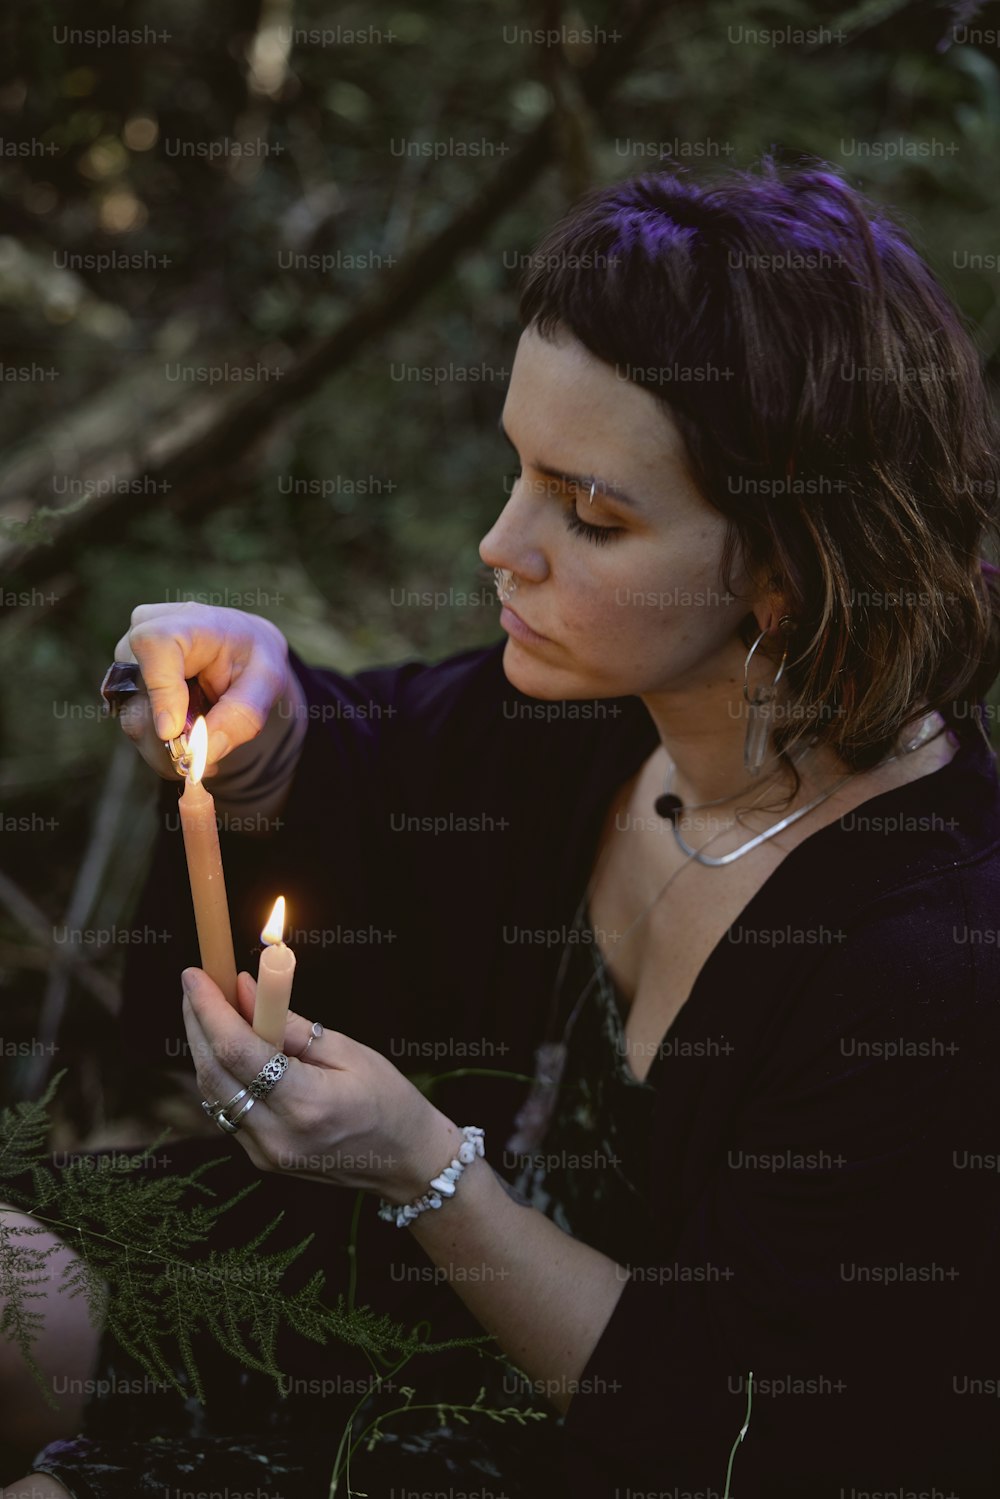 Una mujer sosteniendo una vela encendida en sus manos